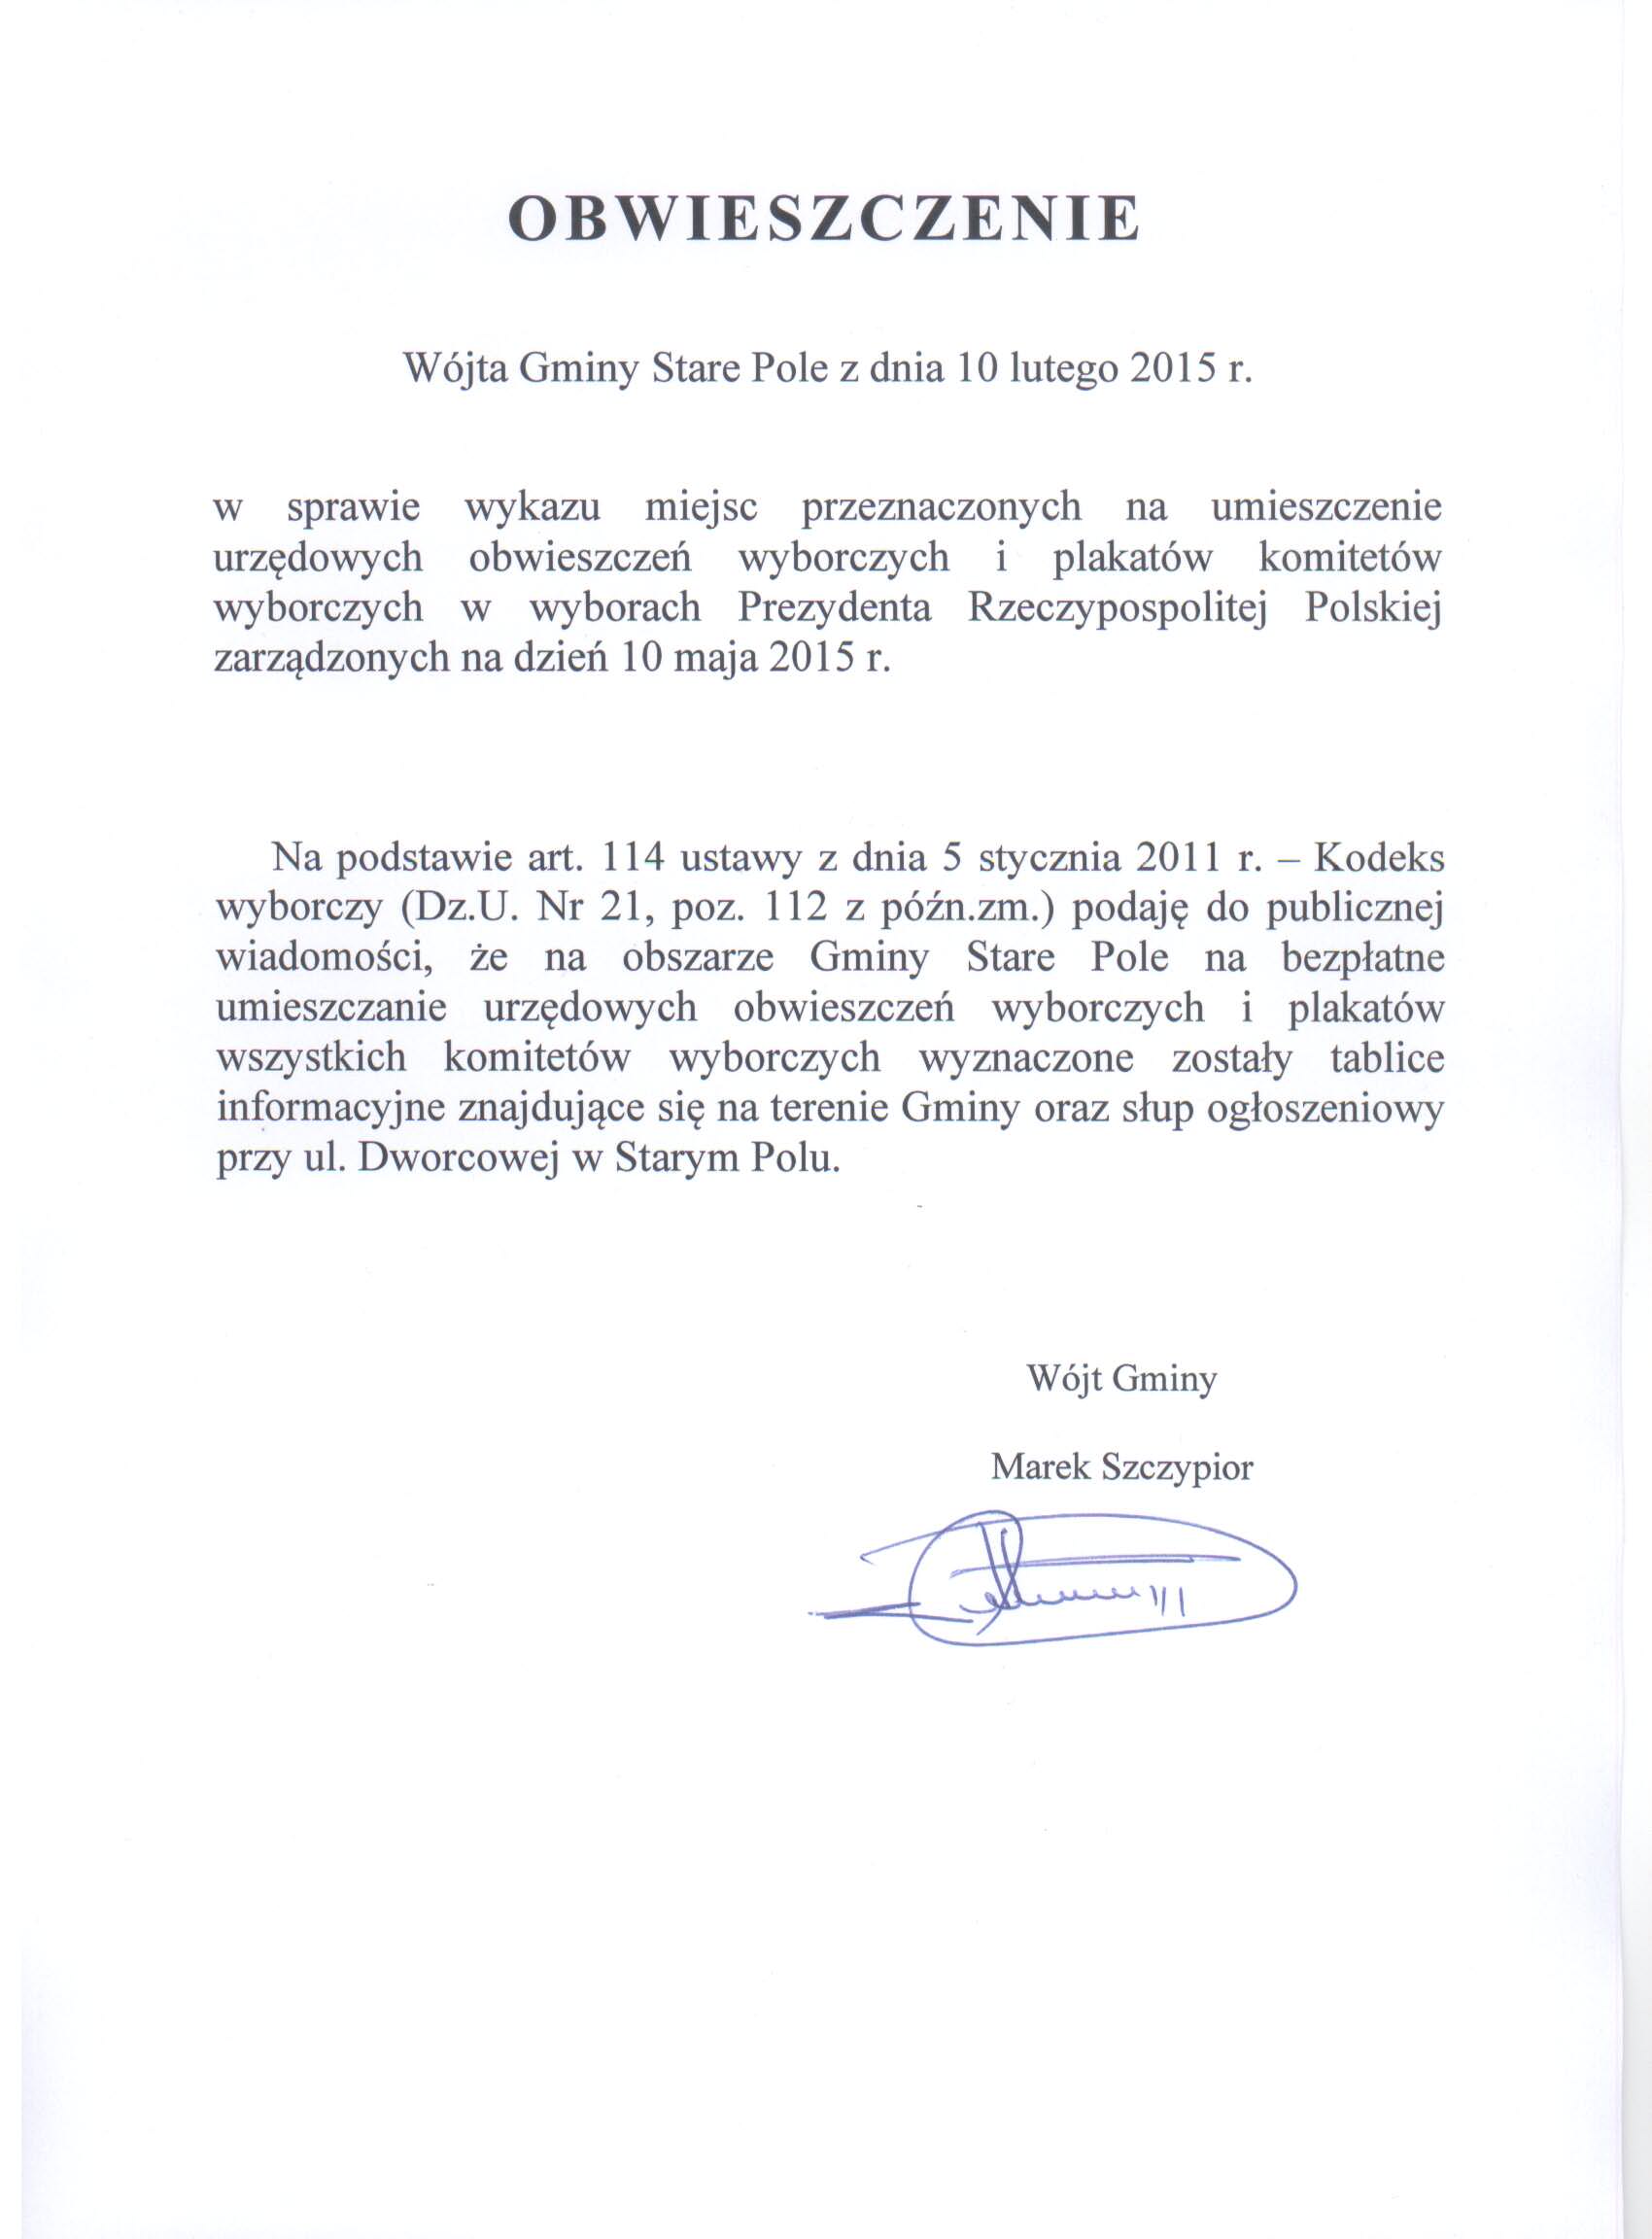 Obwieszczenie Wójta Gminy Stare Pole z dnia 10 lutego 2015 r.